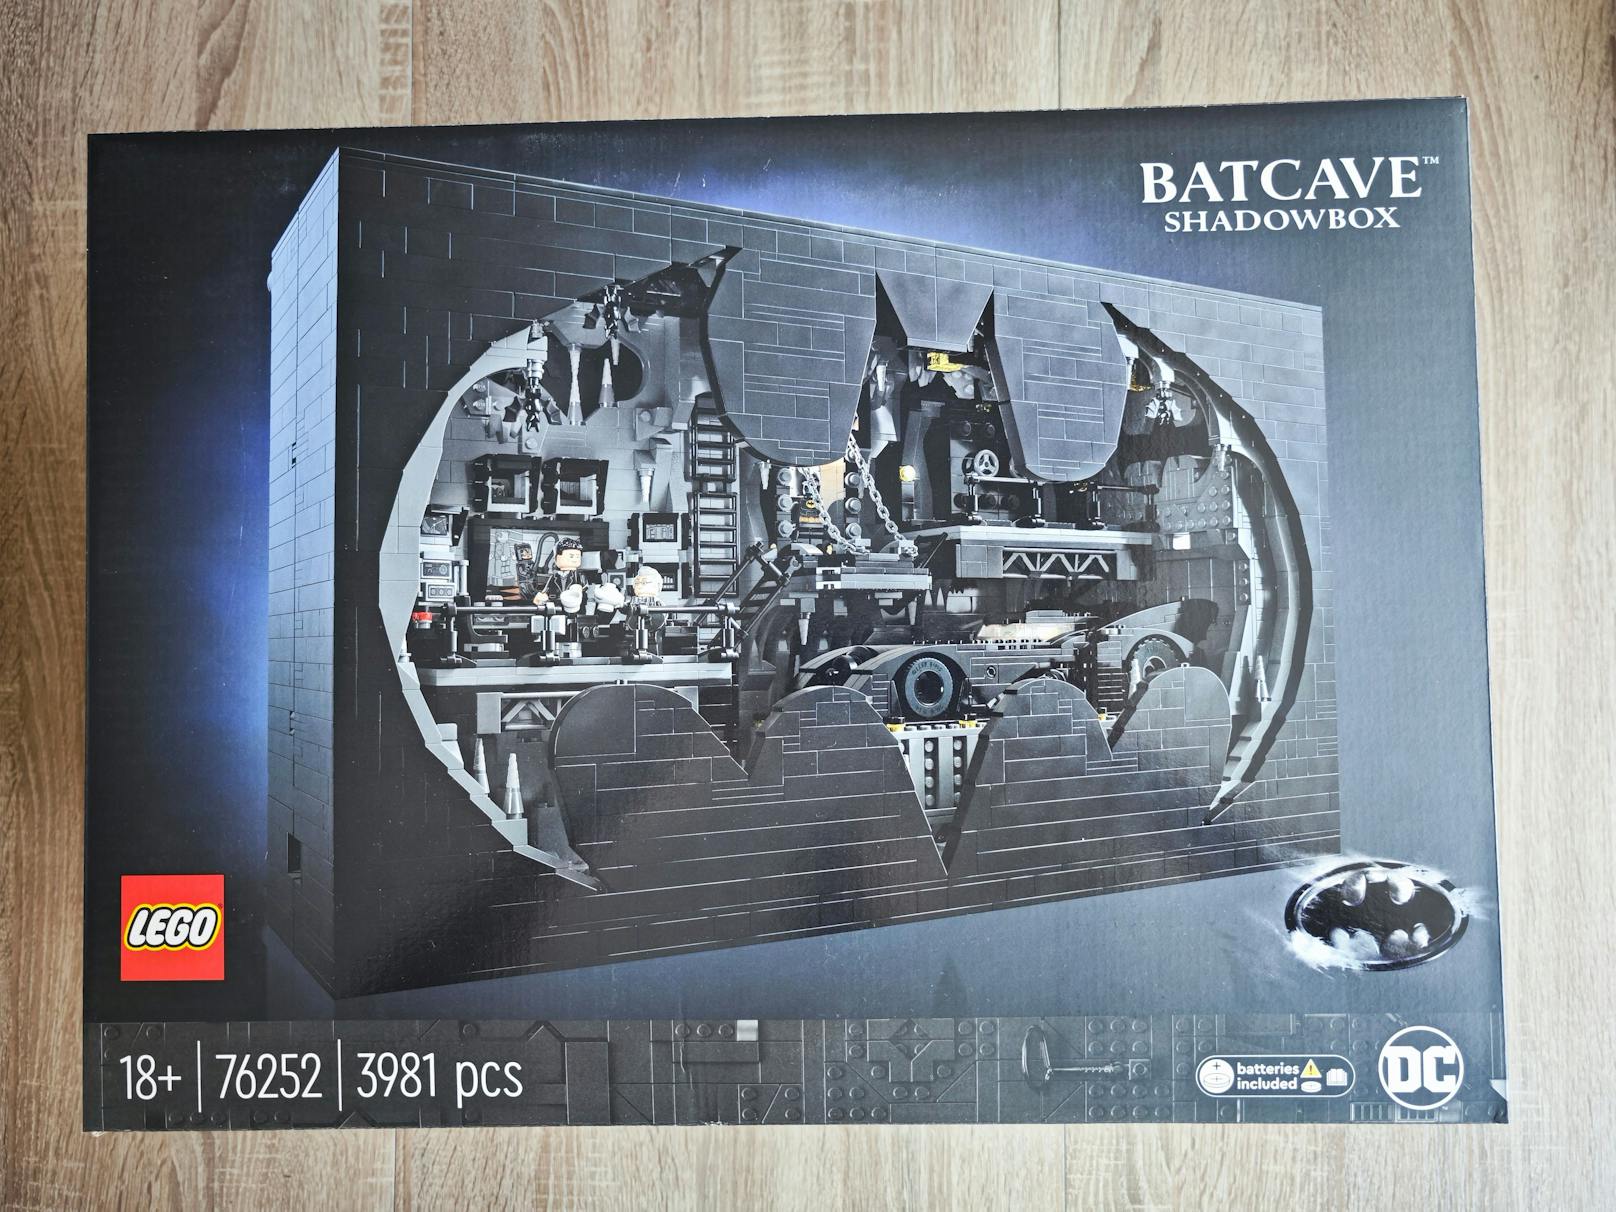 LEGO Bathöhle – Schaukasten 76252 im Test: Diese LEGO-Batcave haben Fans wirklich verdient